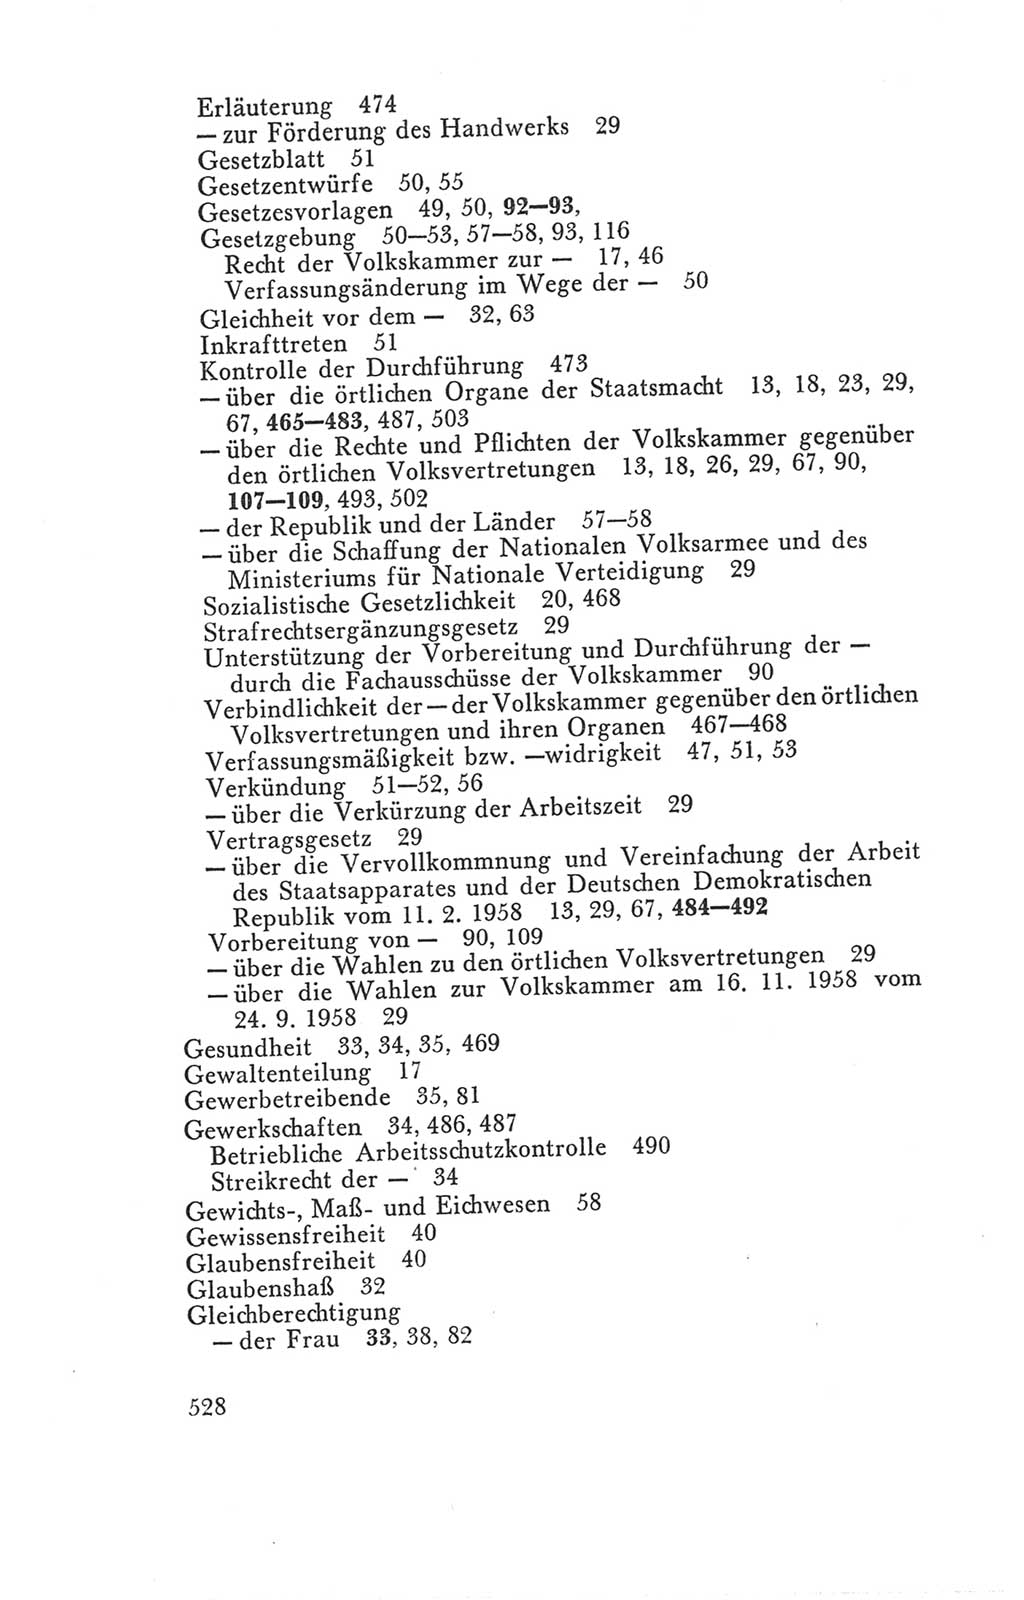 Handbuch der Volkskammer (VK) der Deutschen Demokratischen Republik (DDR), 3. Wahlperiode 1958-1963, Seite 528 (Hdb. VK. DDR 3. WP. 1958-1963, S. 528)